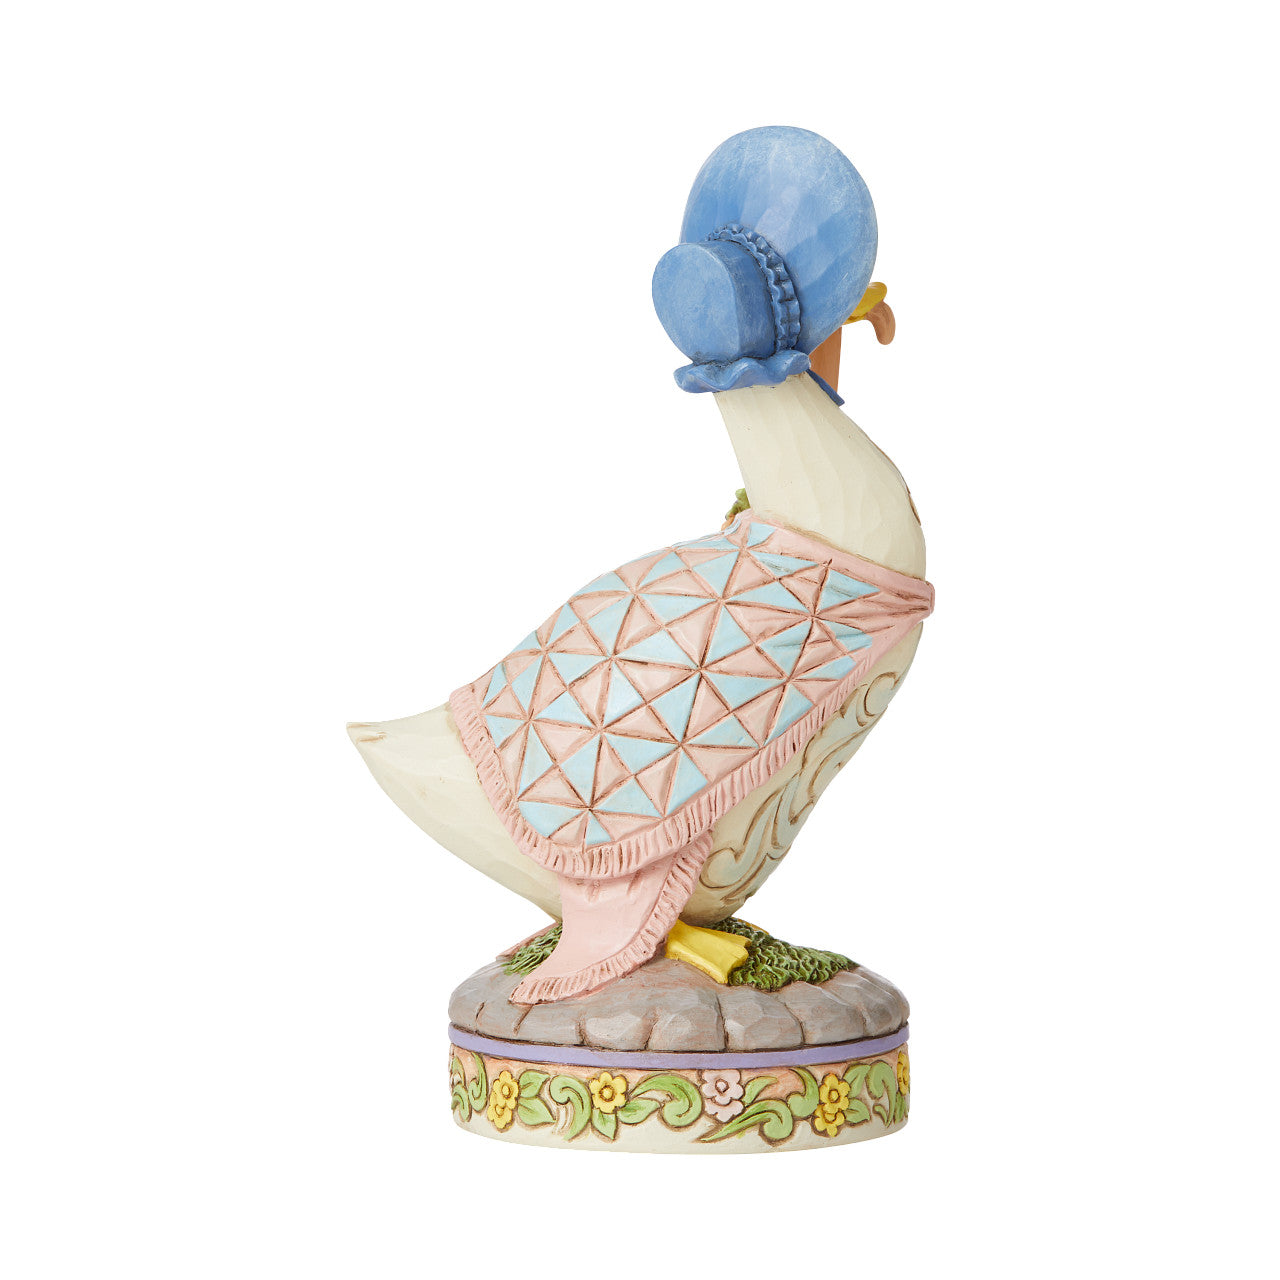 Jemima Puddle-duck - wearing a shawl and a poke bonnet